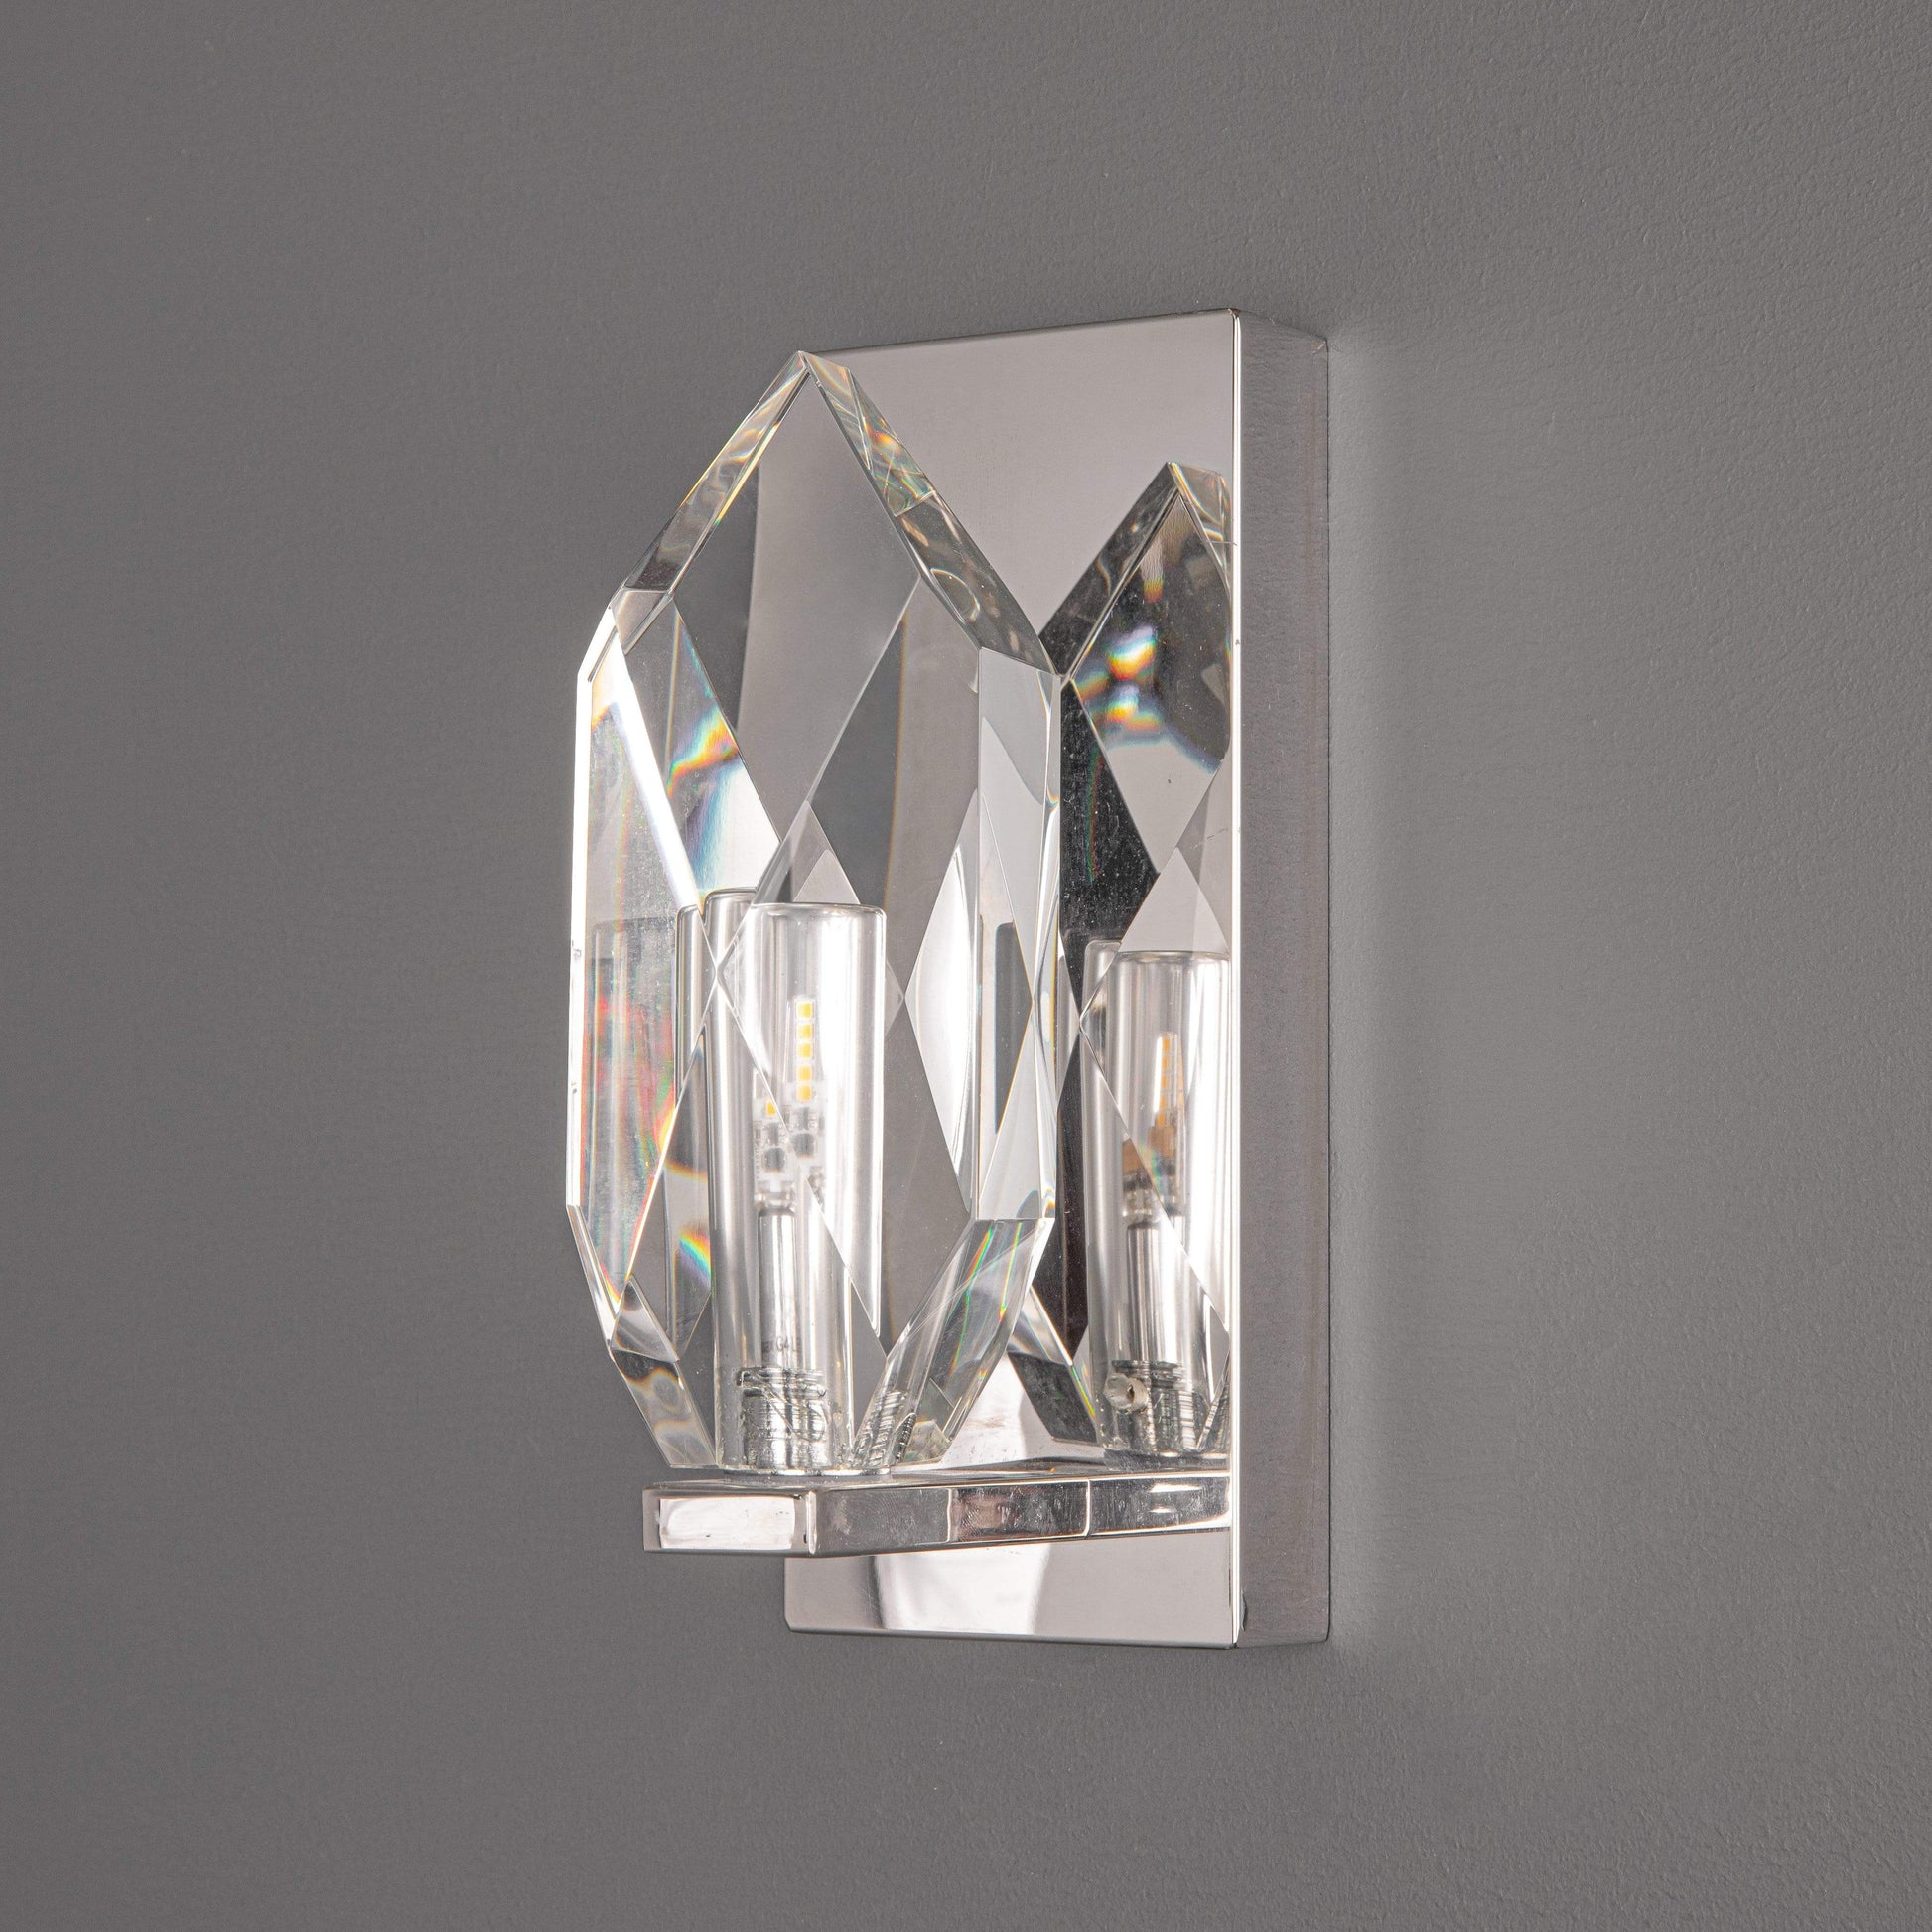 Lights  -  Crystal Wall Light Polished Chrome & Crystal  -  50146067